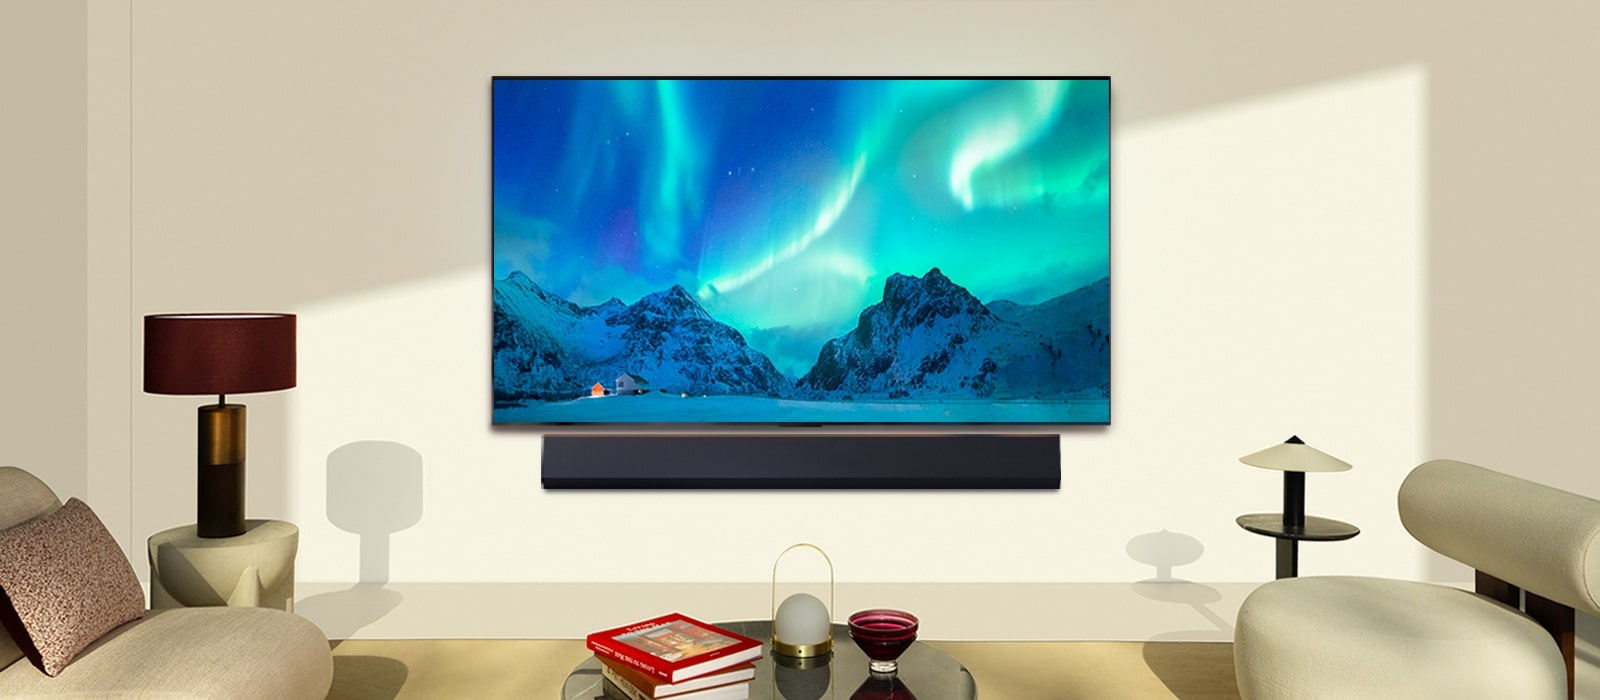 LG OLED TV a zvukový panel LG v modernom obytnom priestore počas dňa. Na obrazovke sa zobrazuje polárna žiara s ideálnou úrovňou jasu.